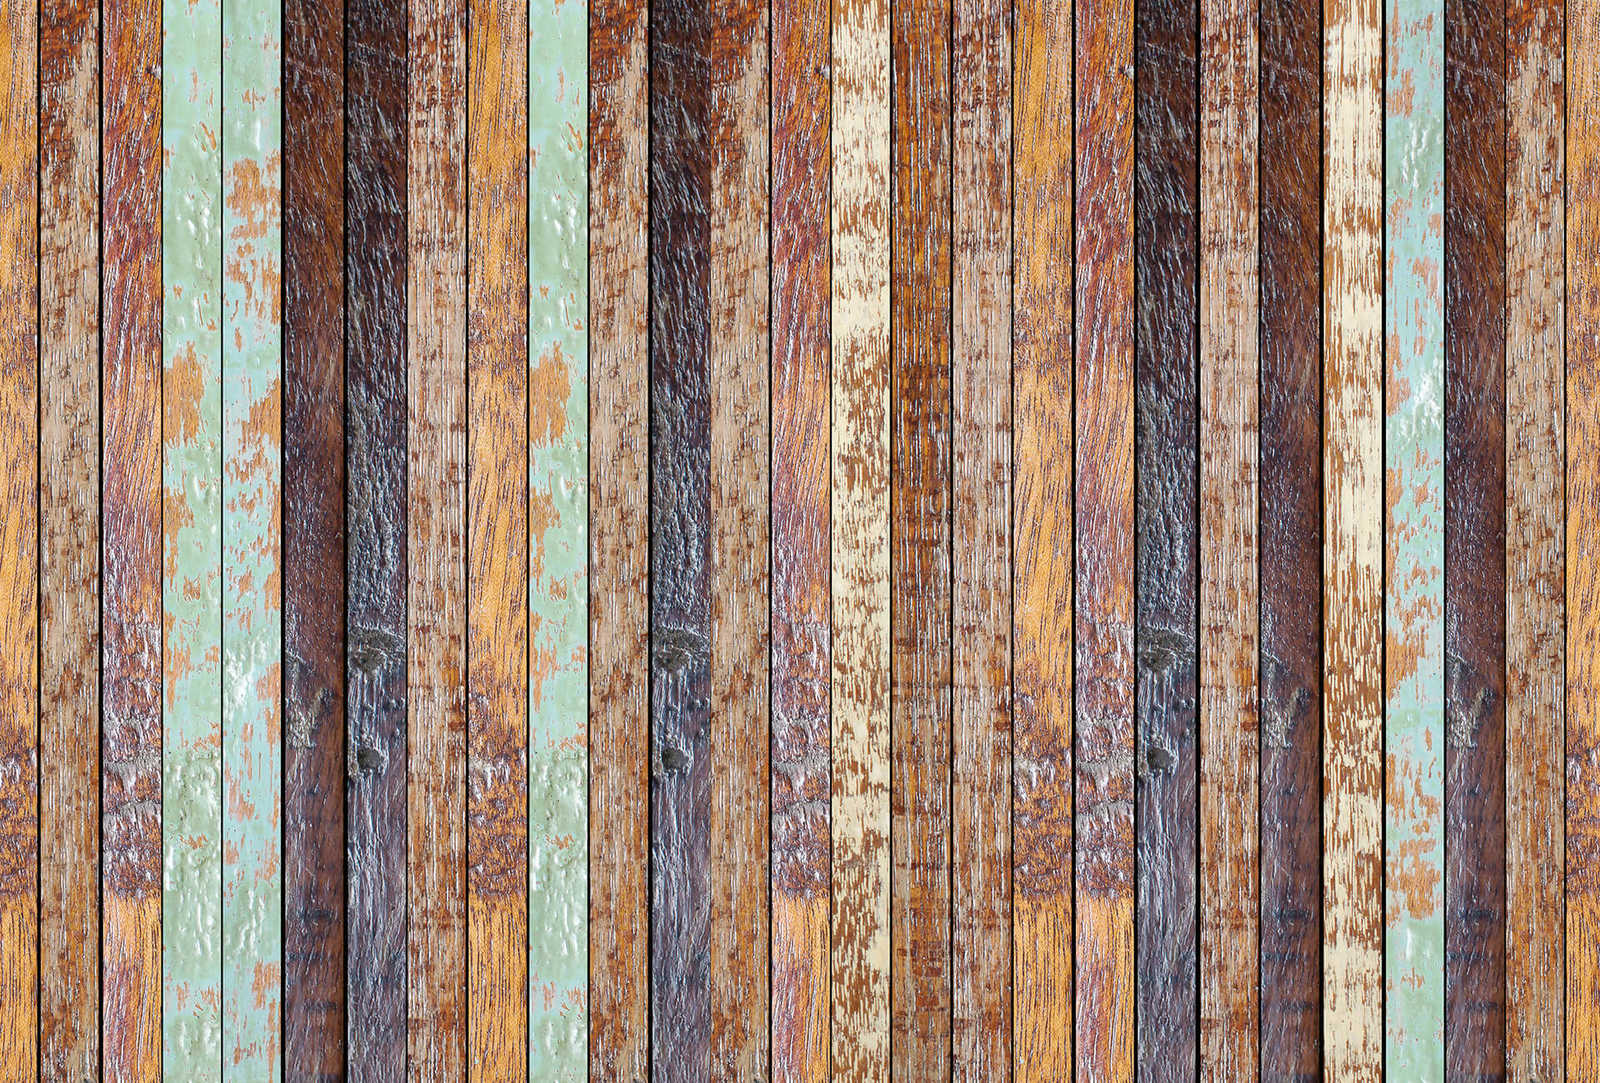         Photo wallpaper wood wall vintage look - blue, brown
    